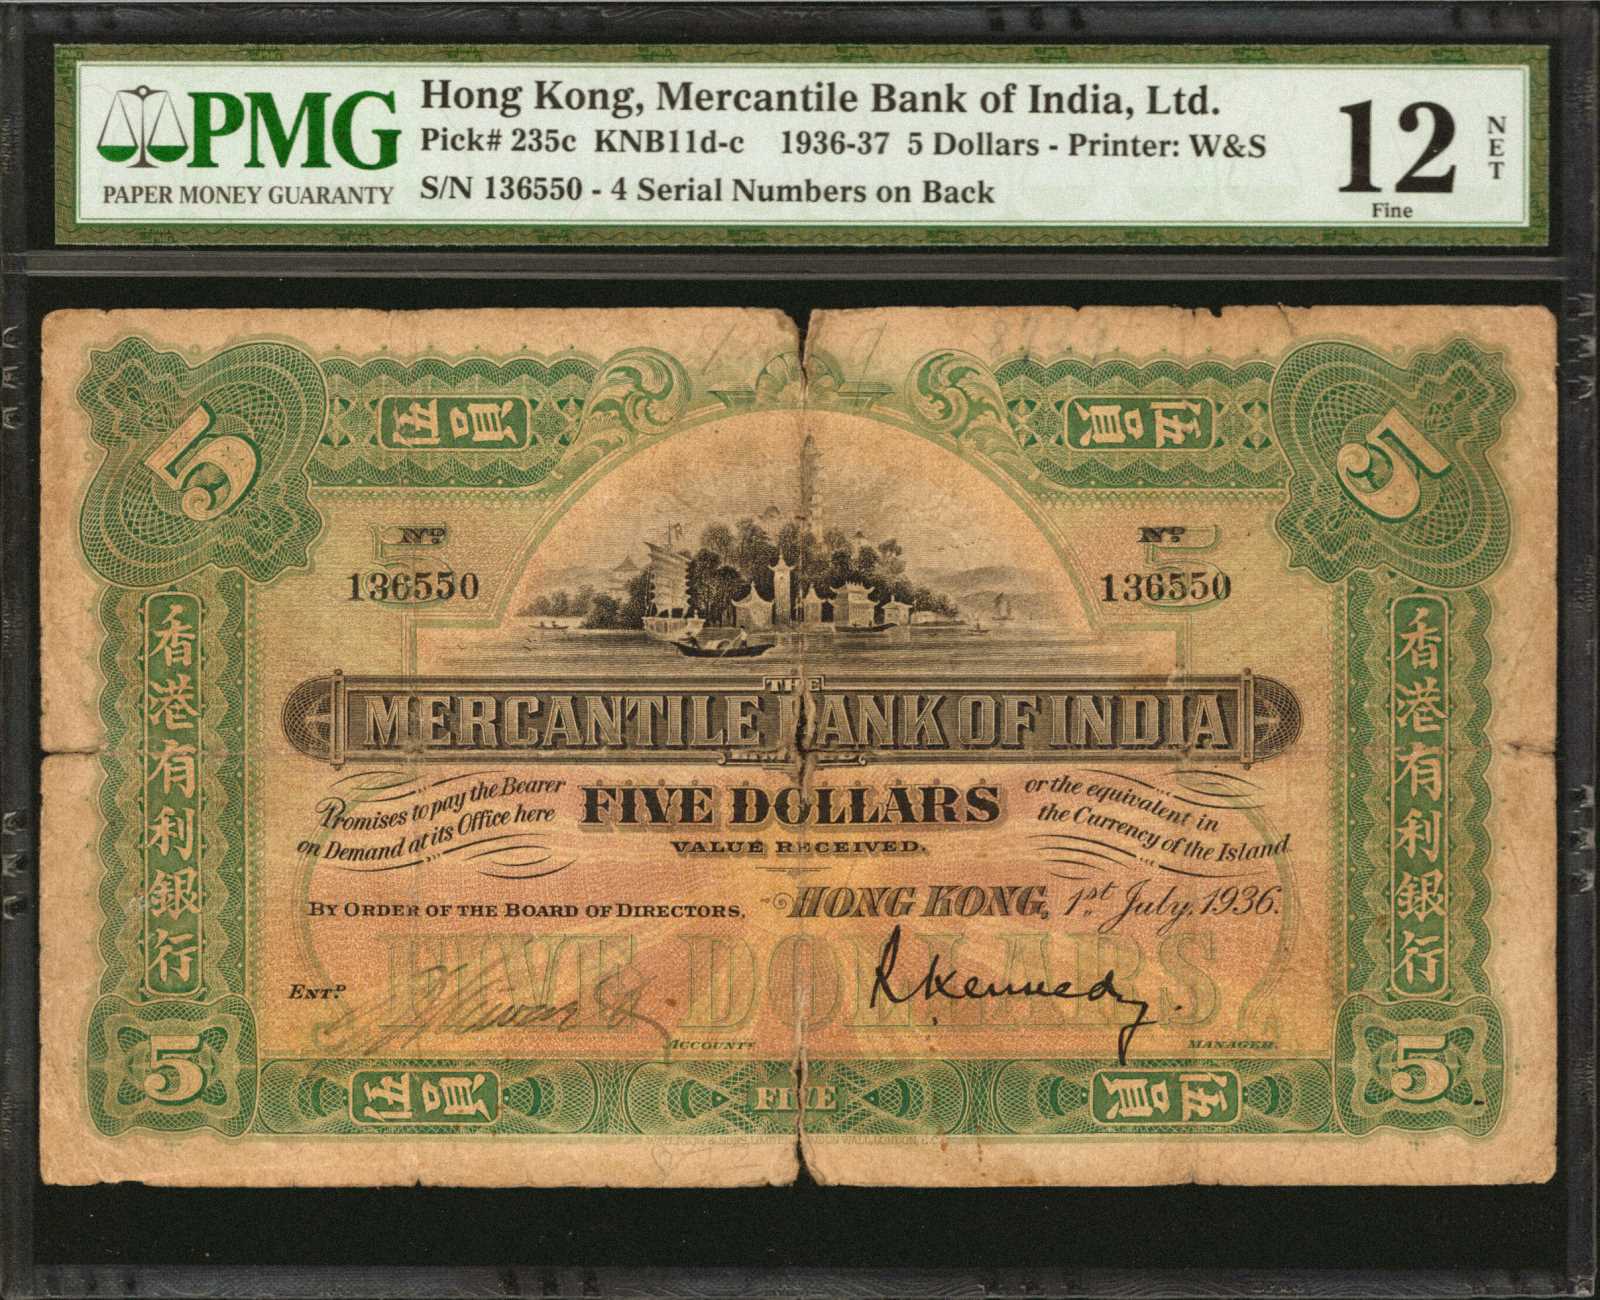 HONG KONG. Mercantile Bank of India Limited. 5 Dollars, 1936. P